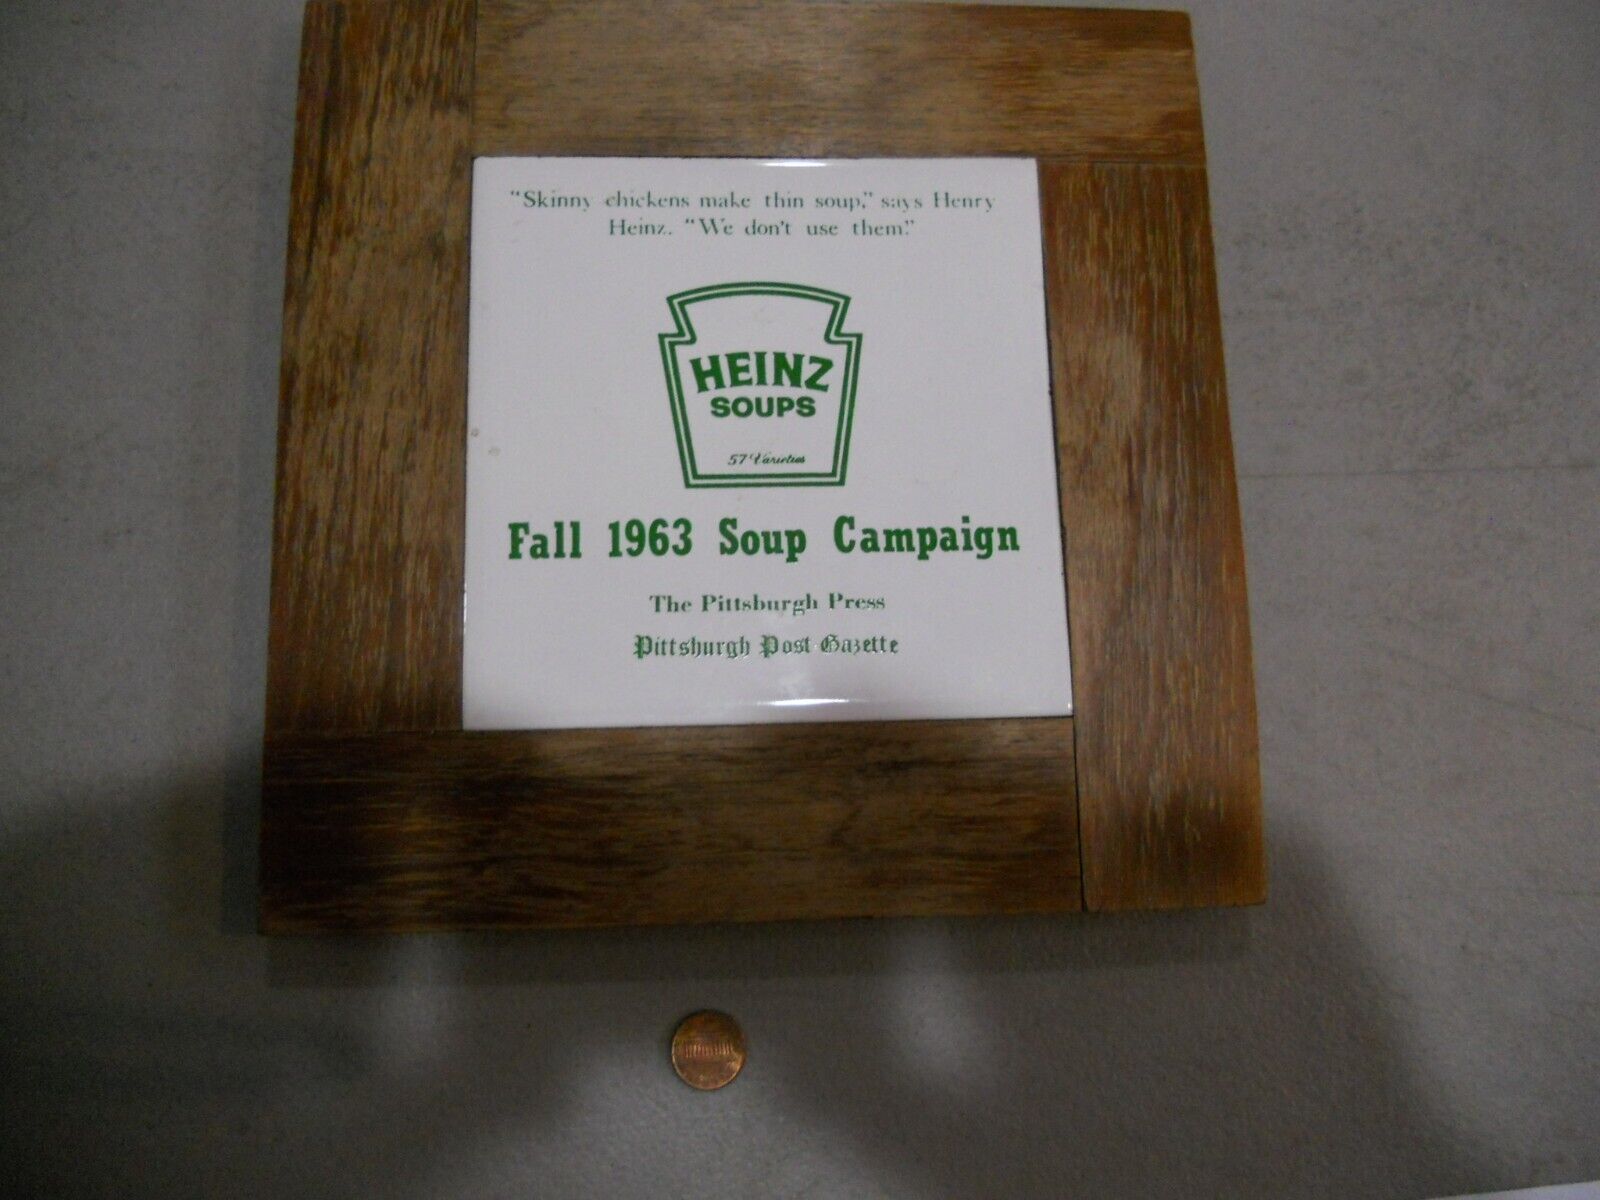 Vintage Heinz Soups Fall 1963 Soup Campaign Plaque